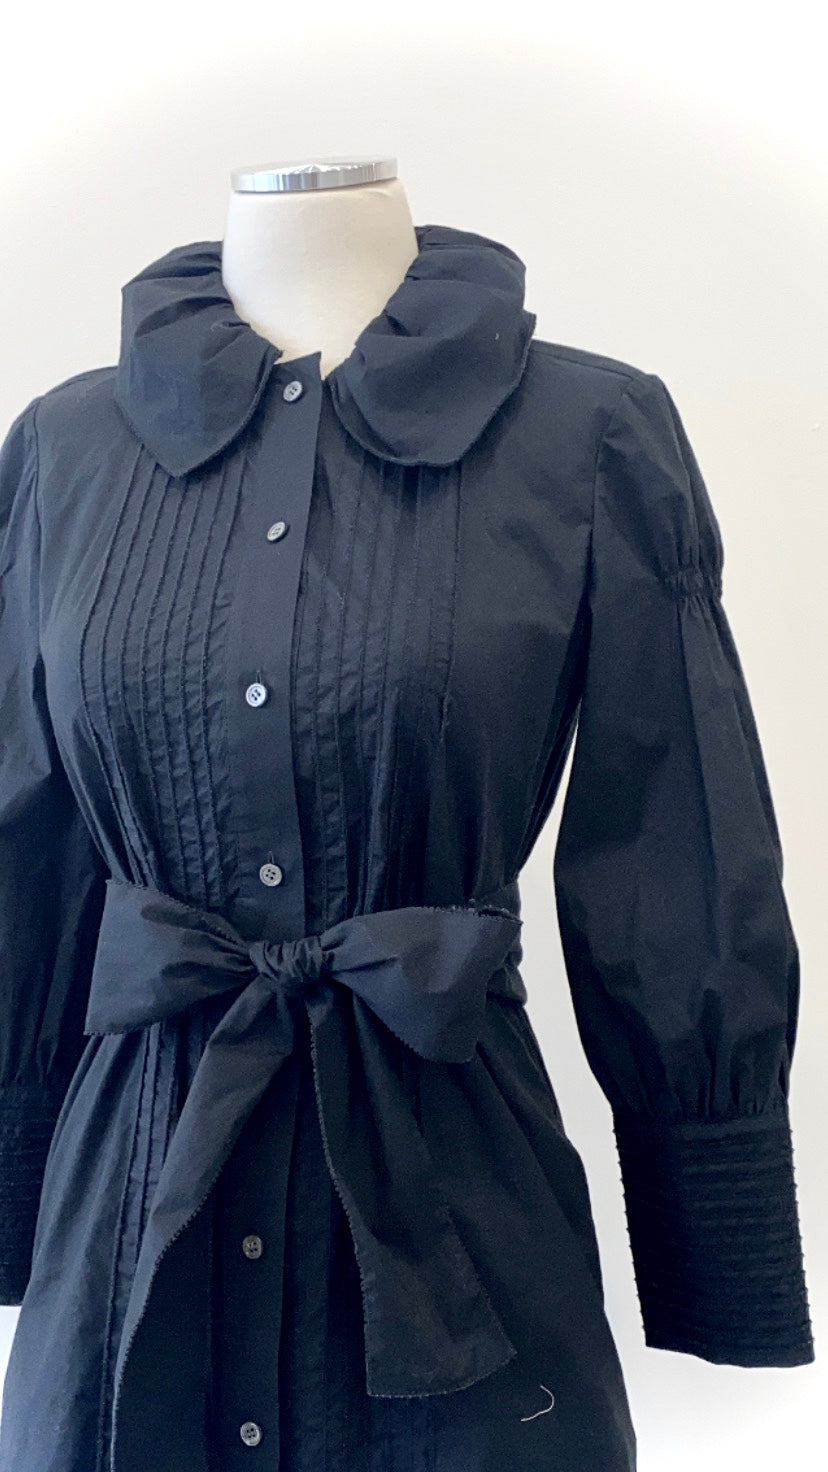 Diane von Furstenberg - Cotton Button-Down Dress with Sash